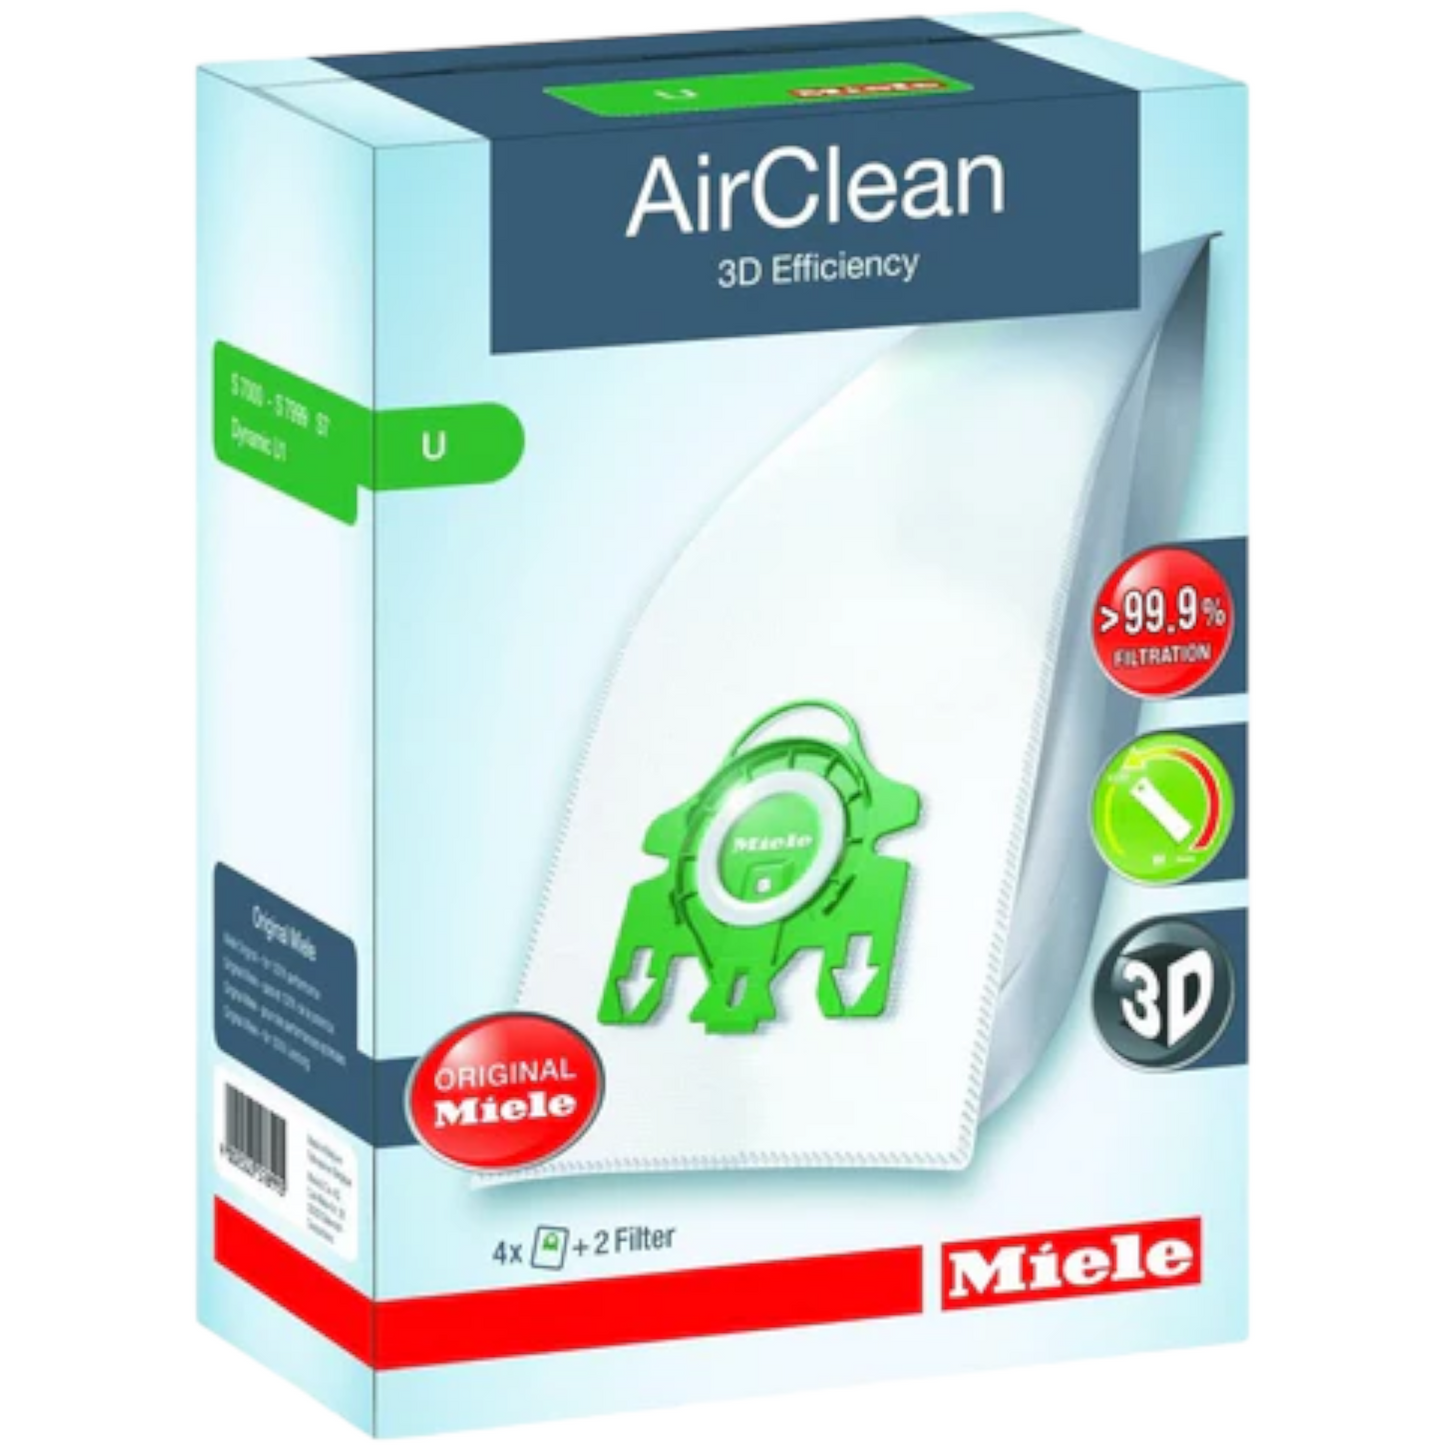 Miele AirClean 3D Efficiency Type U Bags - Genuine - 4 Pack